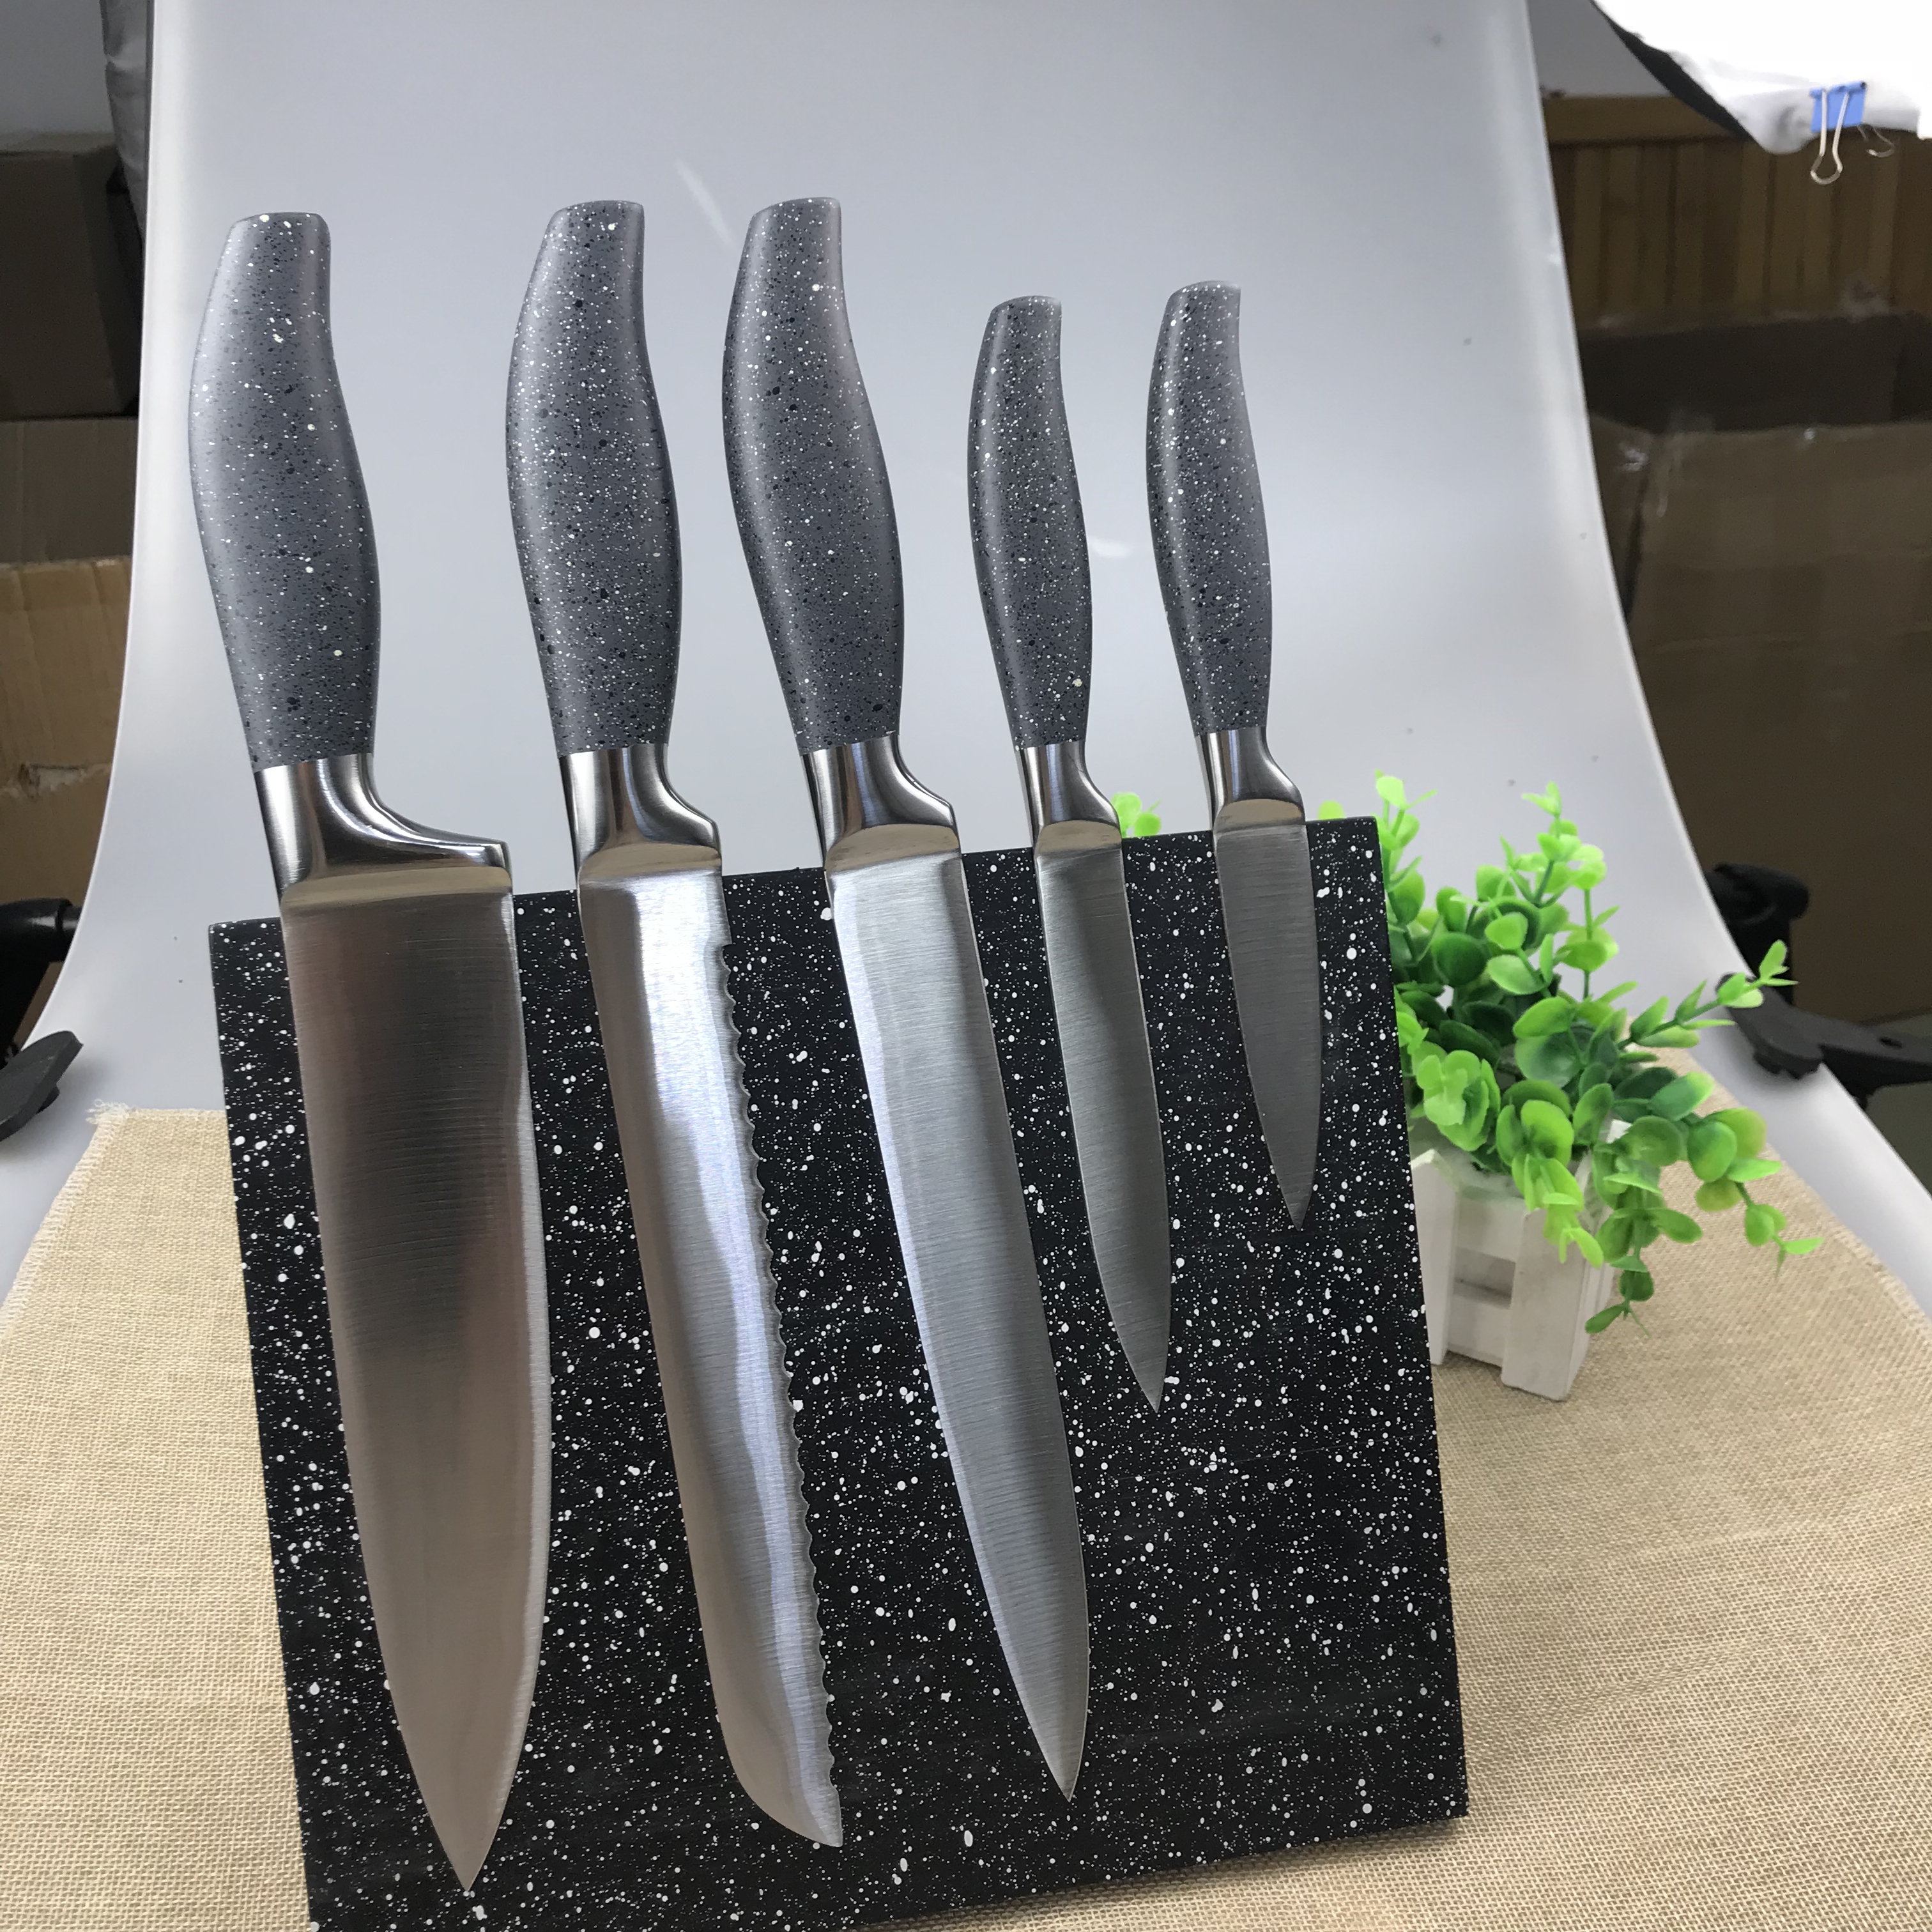 Knives set ORKN011